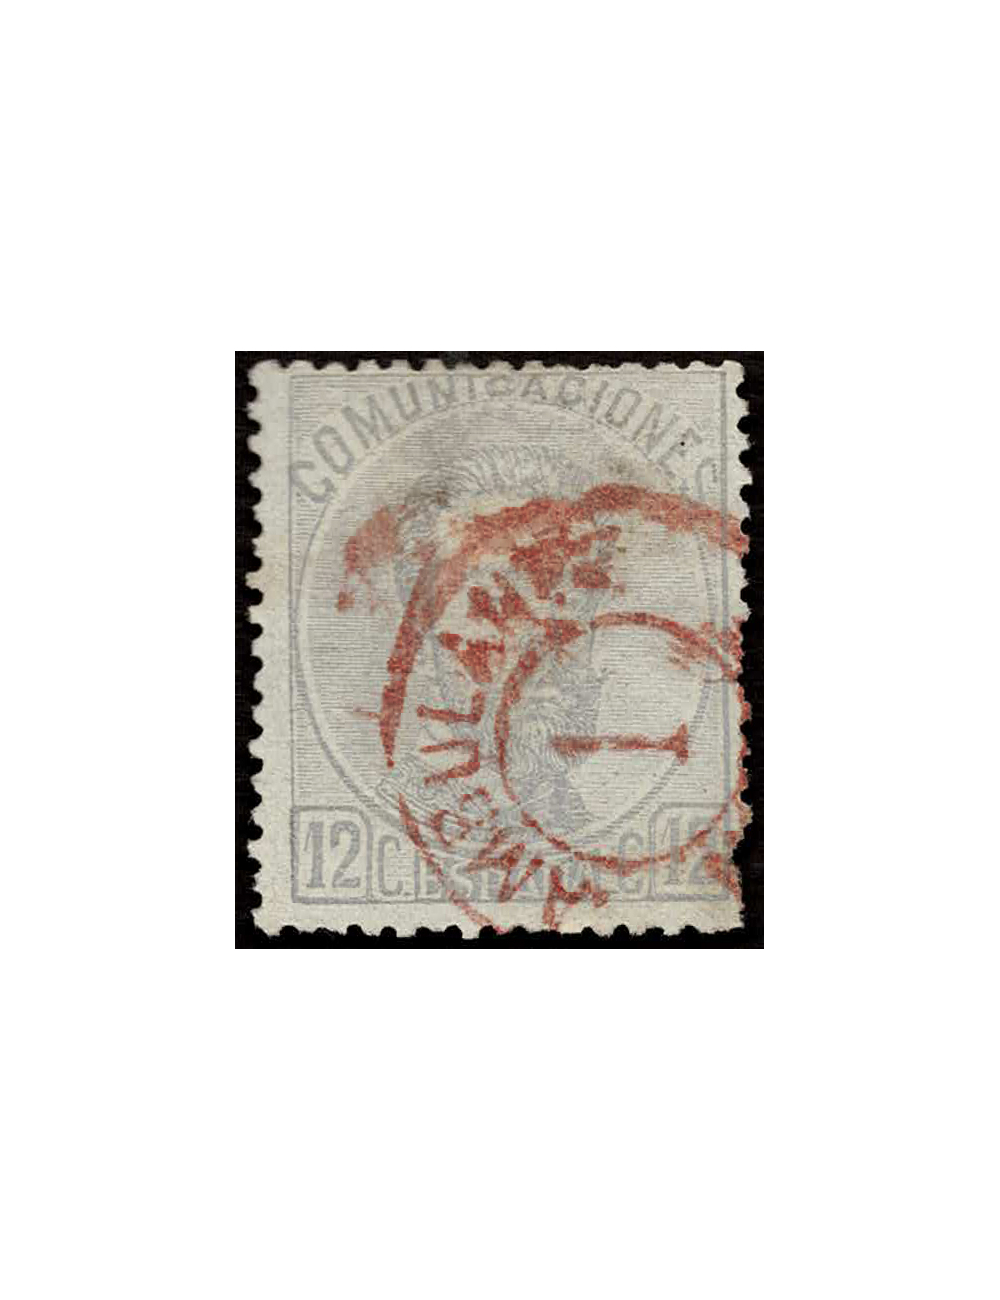 1872. Sello de 12 cts. gris de la emisión de Amadeo de 1 de octubre de 1872 cancelado con el matasello “AMBULANTE / 1 / NORTE”. 